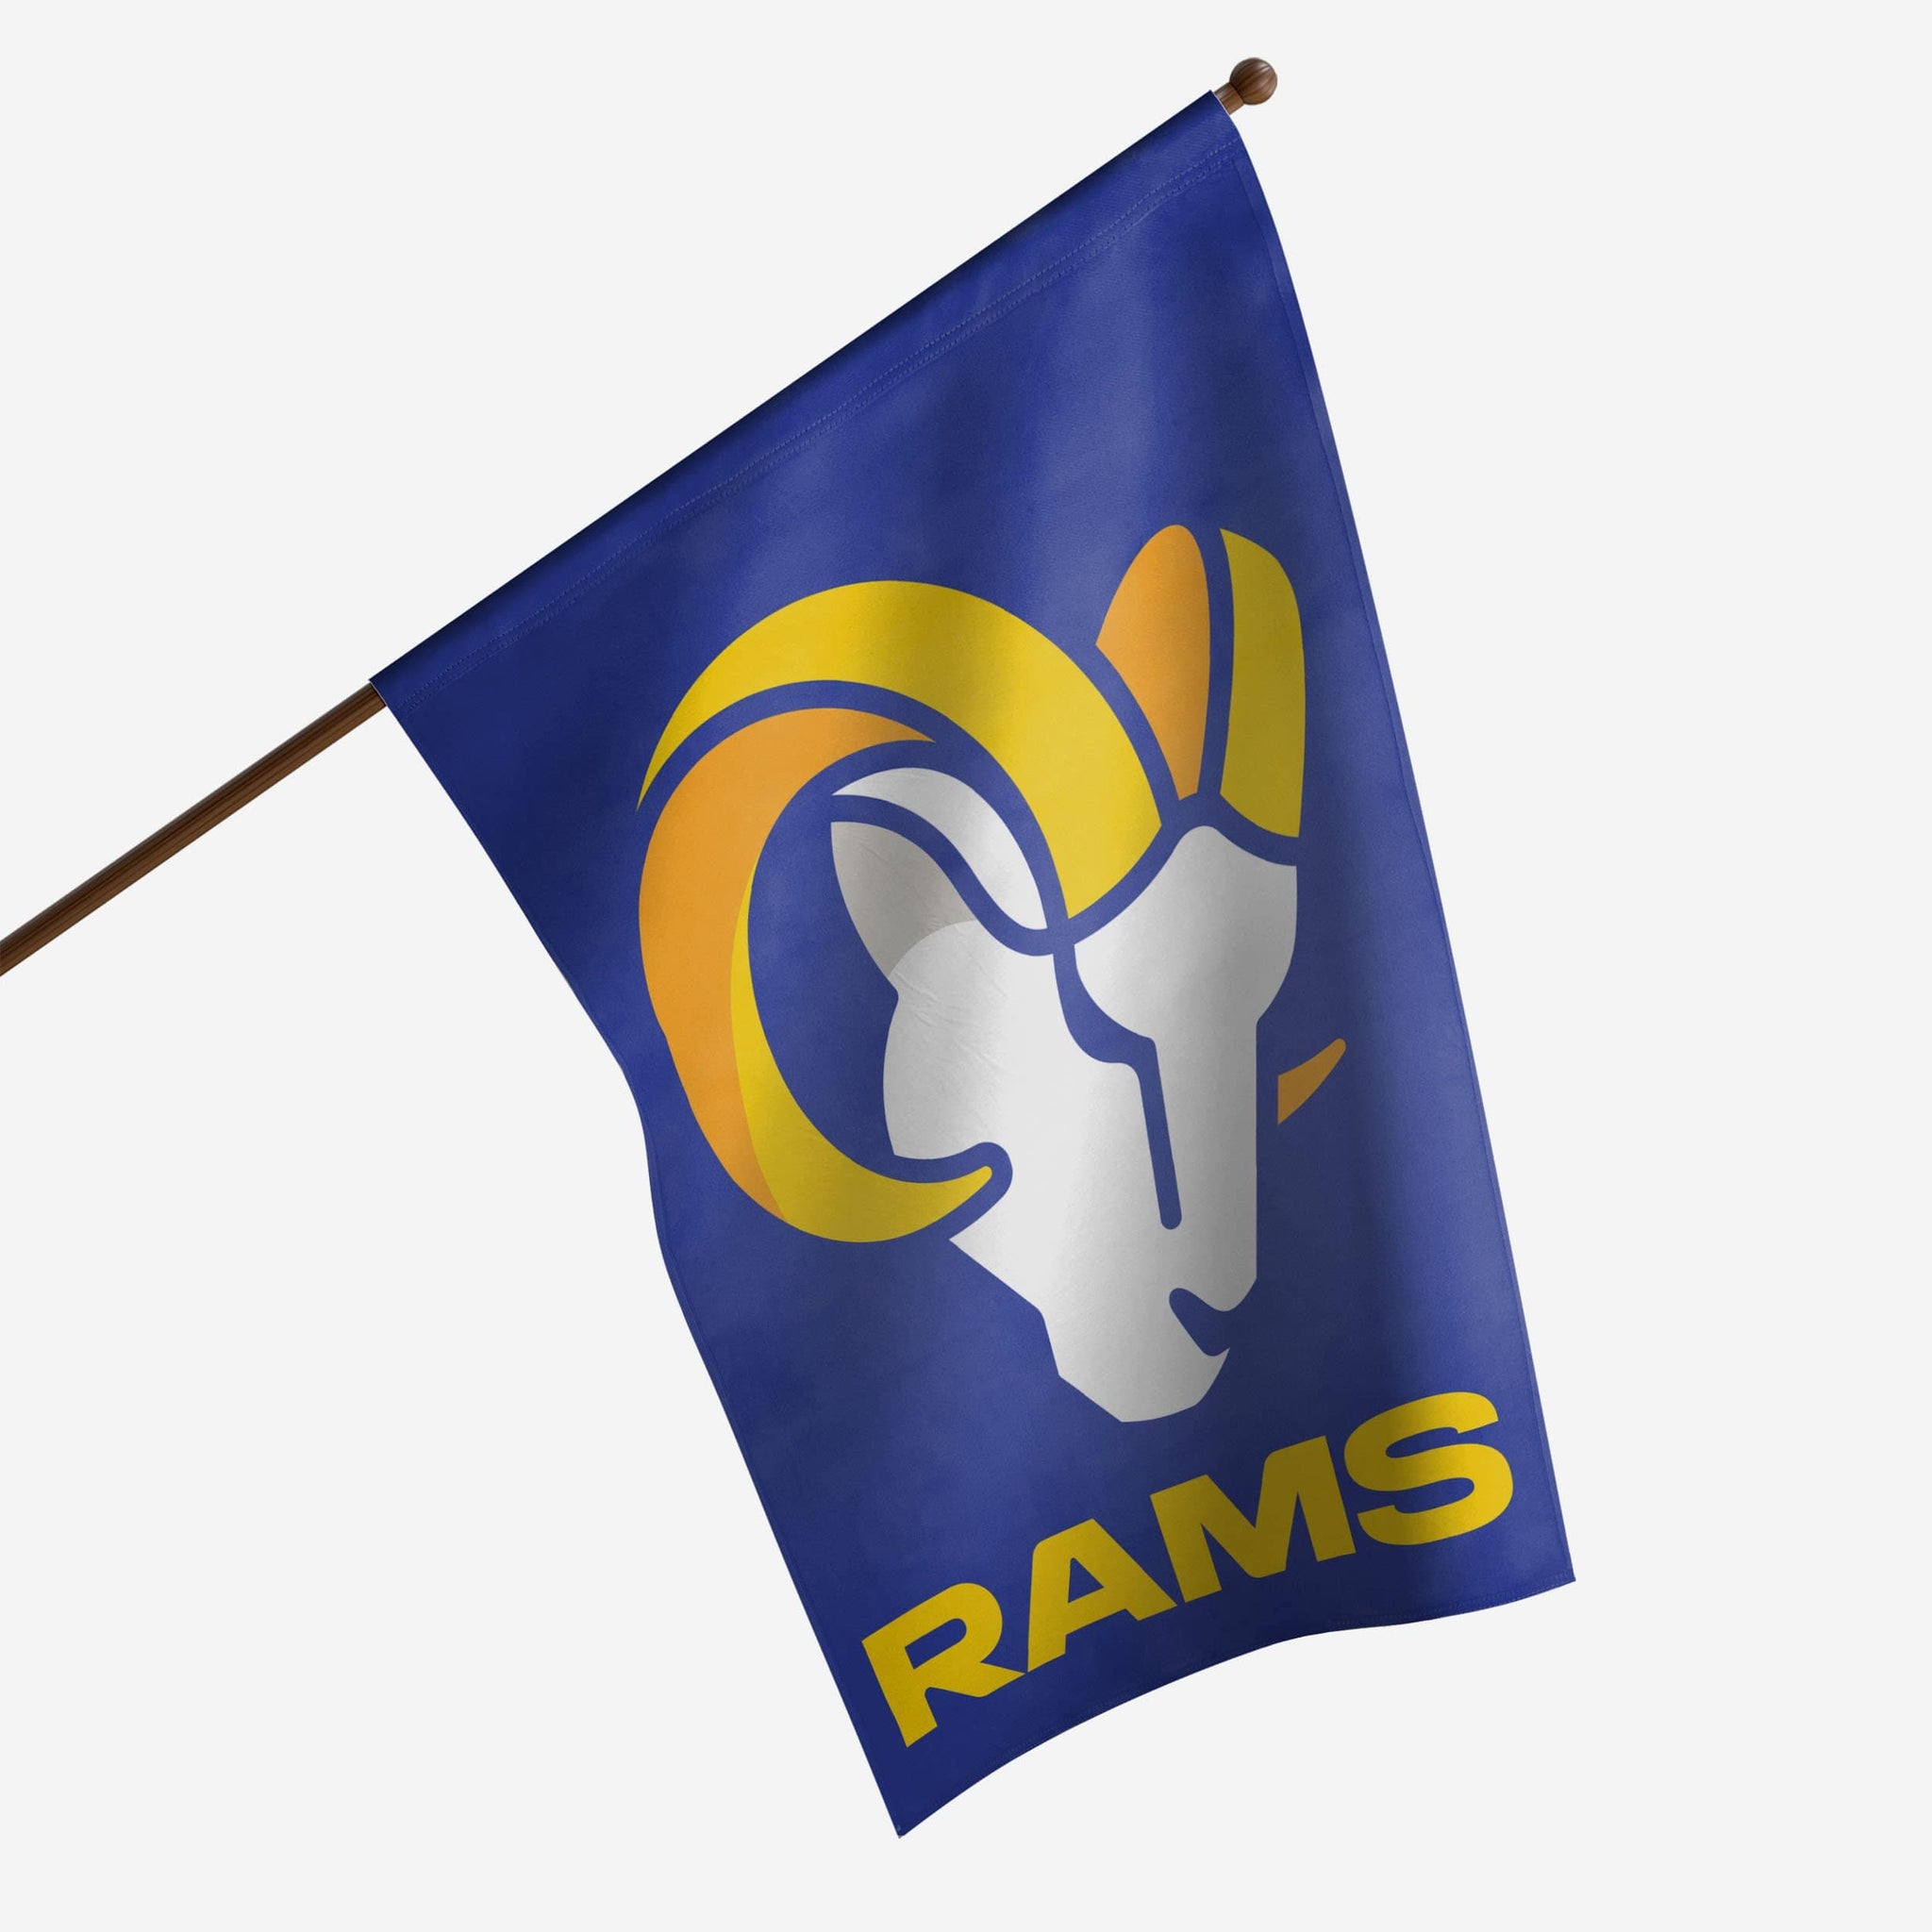 Rams pin Cavaliers, Rebels